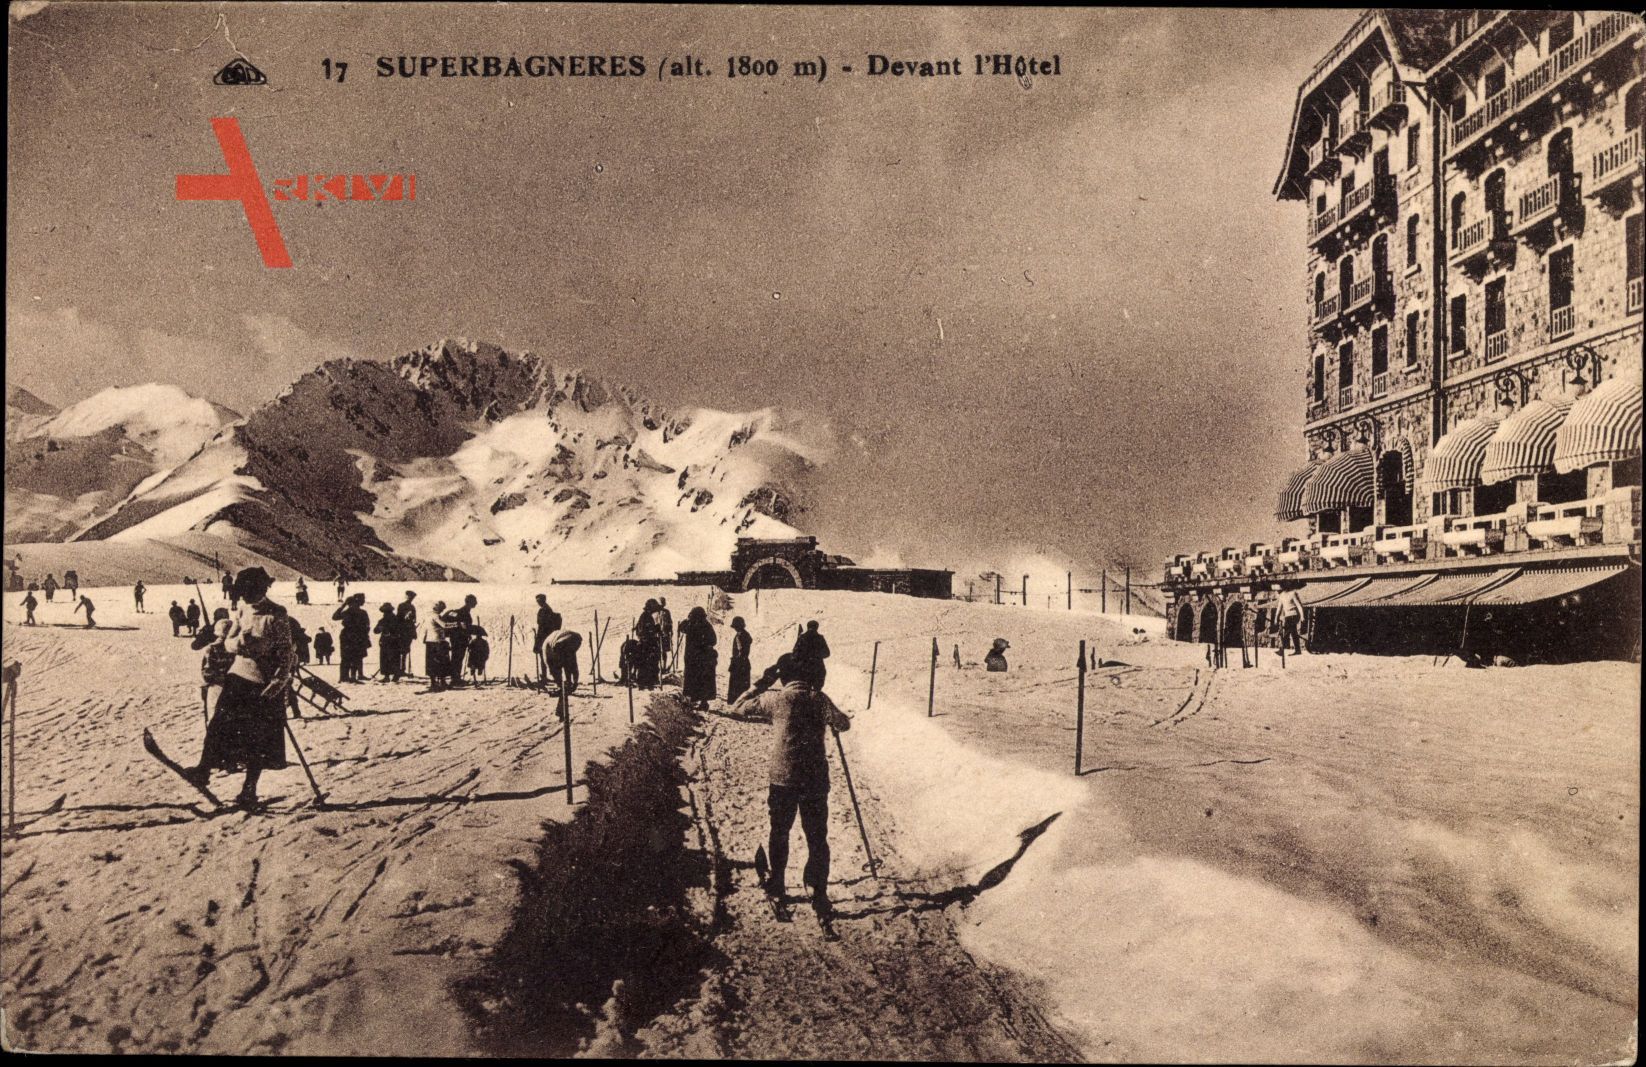 Superbagneres Haute Garonne, Devant lHôtel, Skiresort, Skifahrer